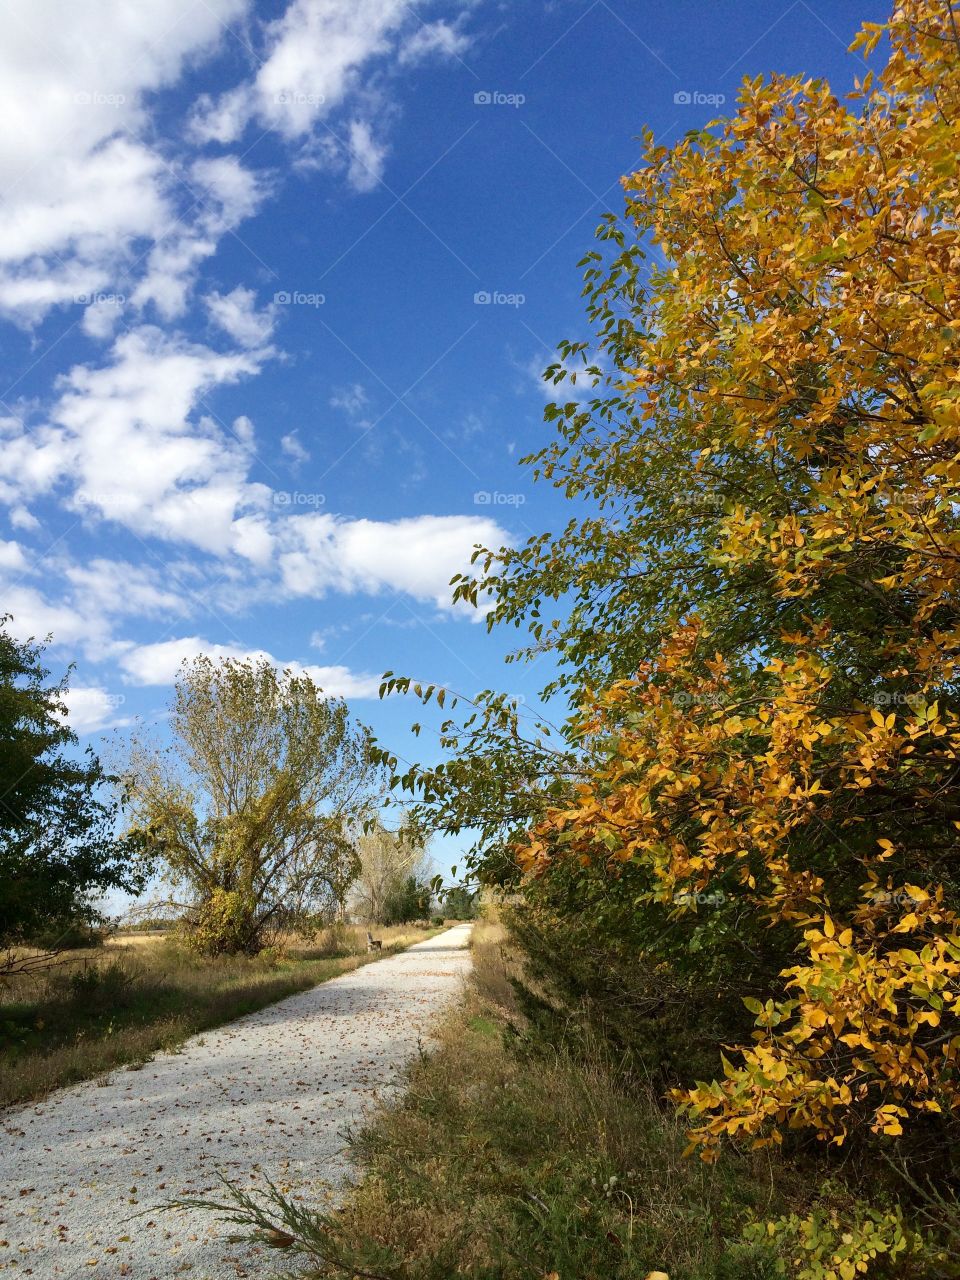 Autumn trail